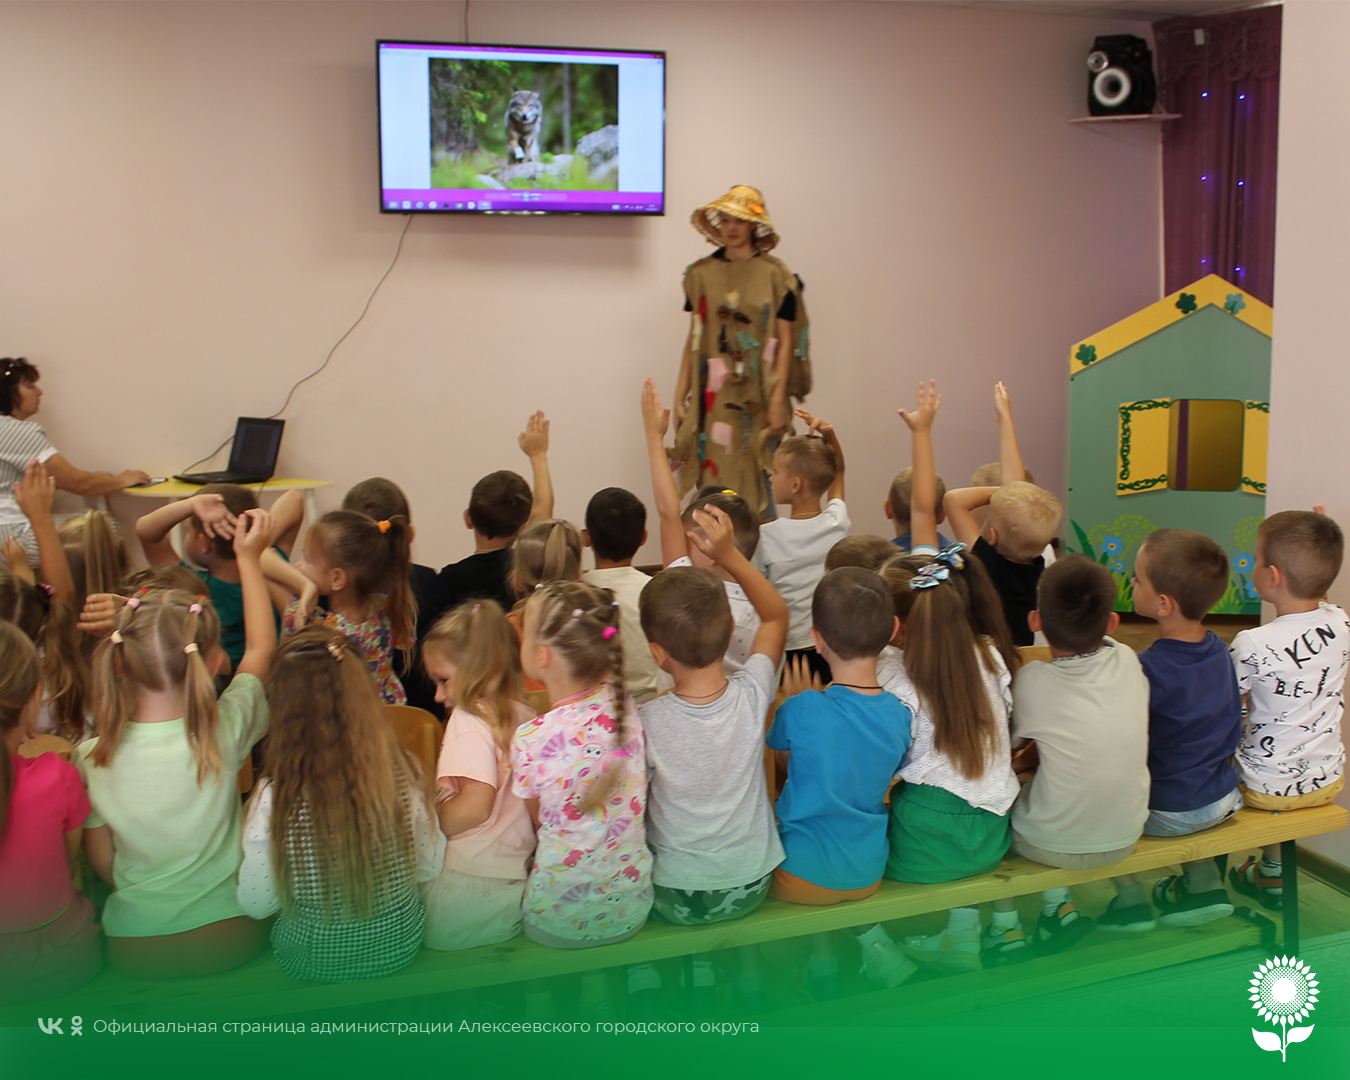 В детских садах Алексеевского городского округа были организованы познавательно-образовательные мероприятия, посвященные Дню дикой природы.